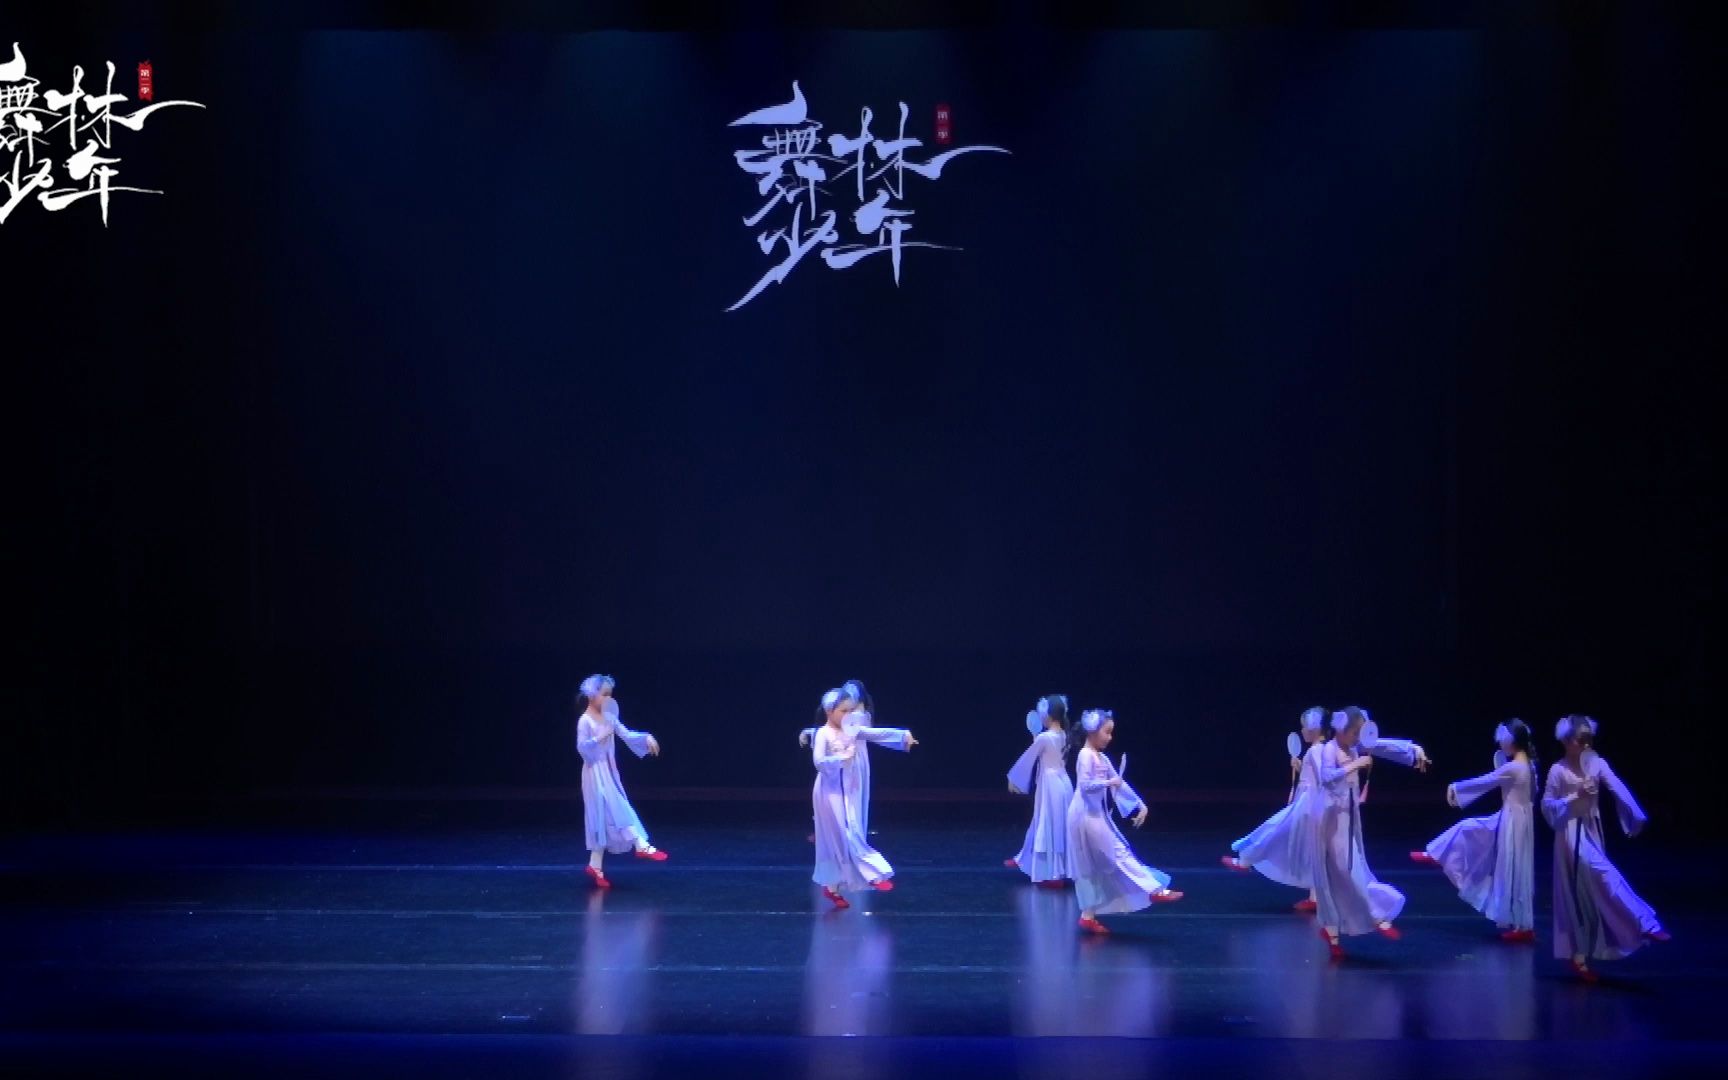 第二季“舞林少年”全国电视舞蹈展演剧目《予君书》